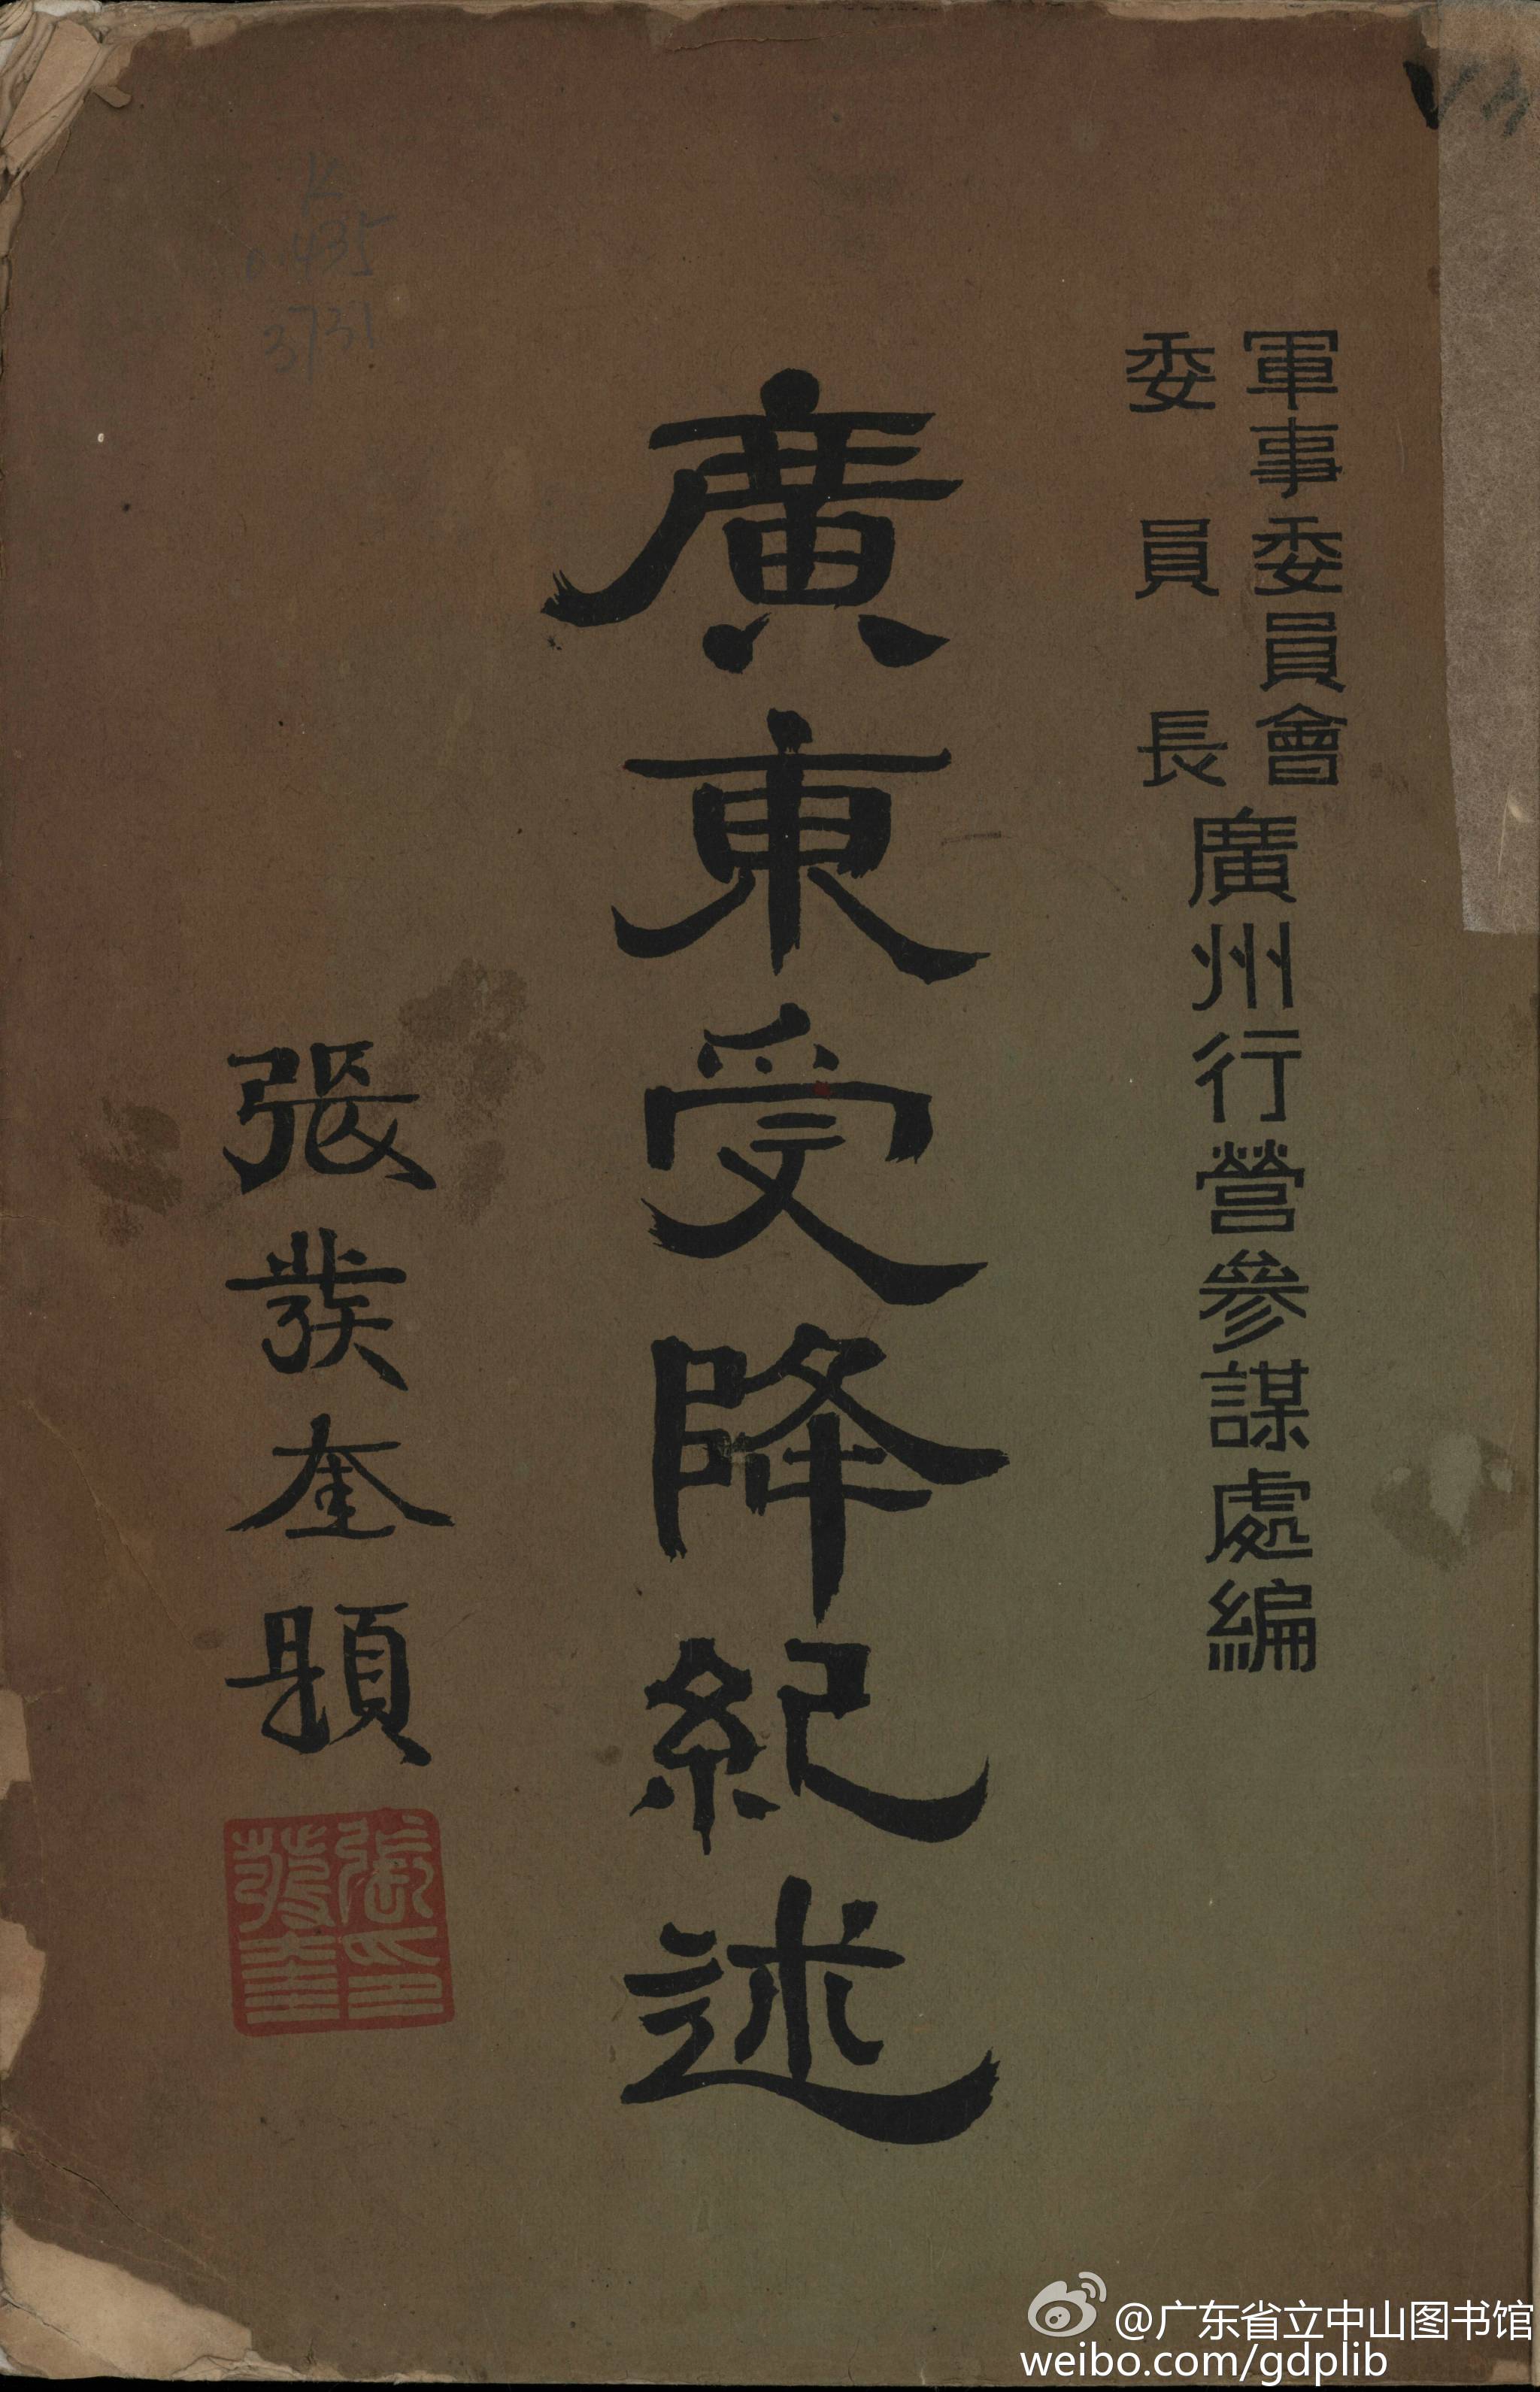 《广东受降纪述》  广州行营参谋处编  1946年出版